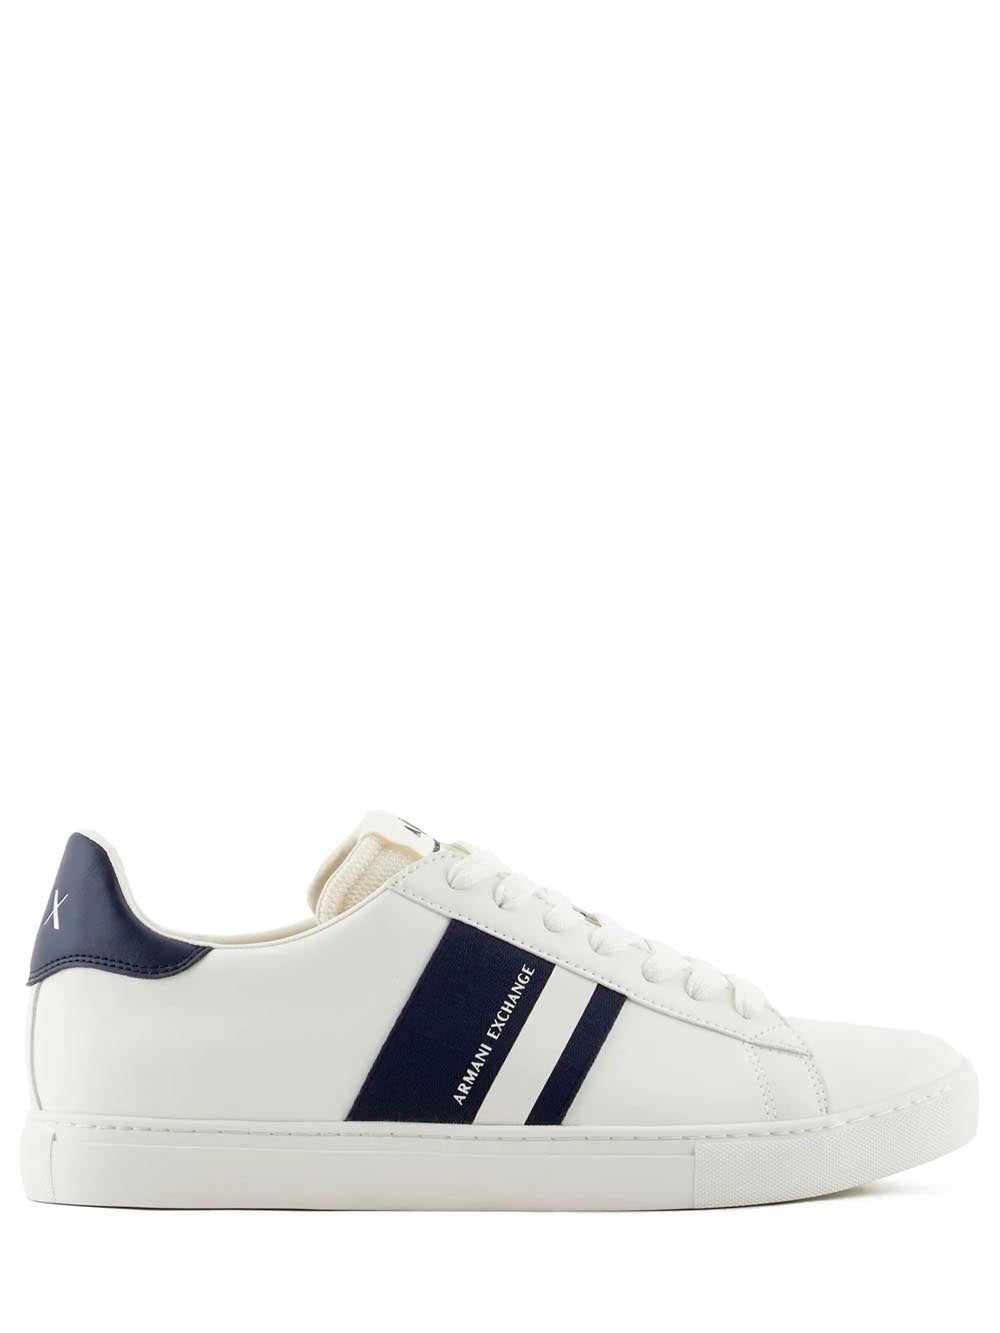 Armani Exchange Sneakers Uomo Bianco/blu